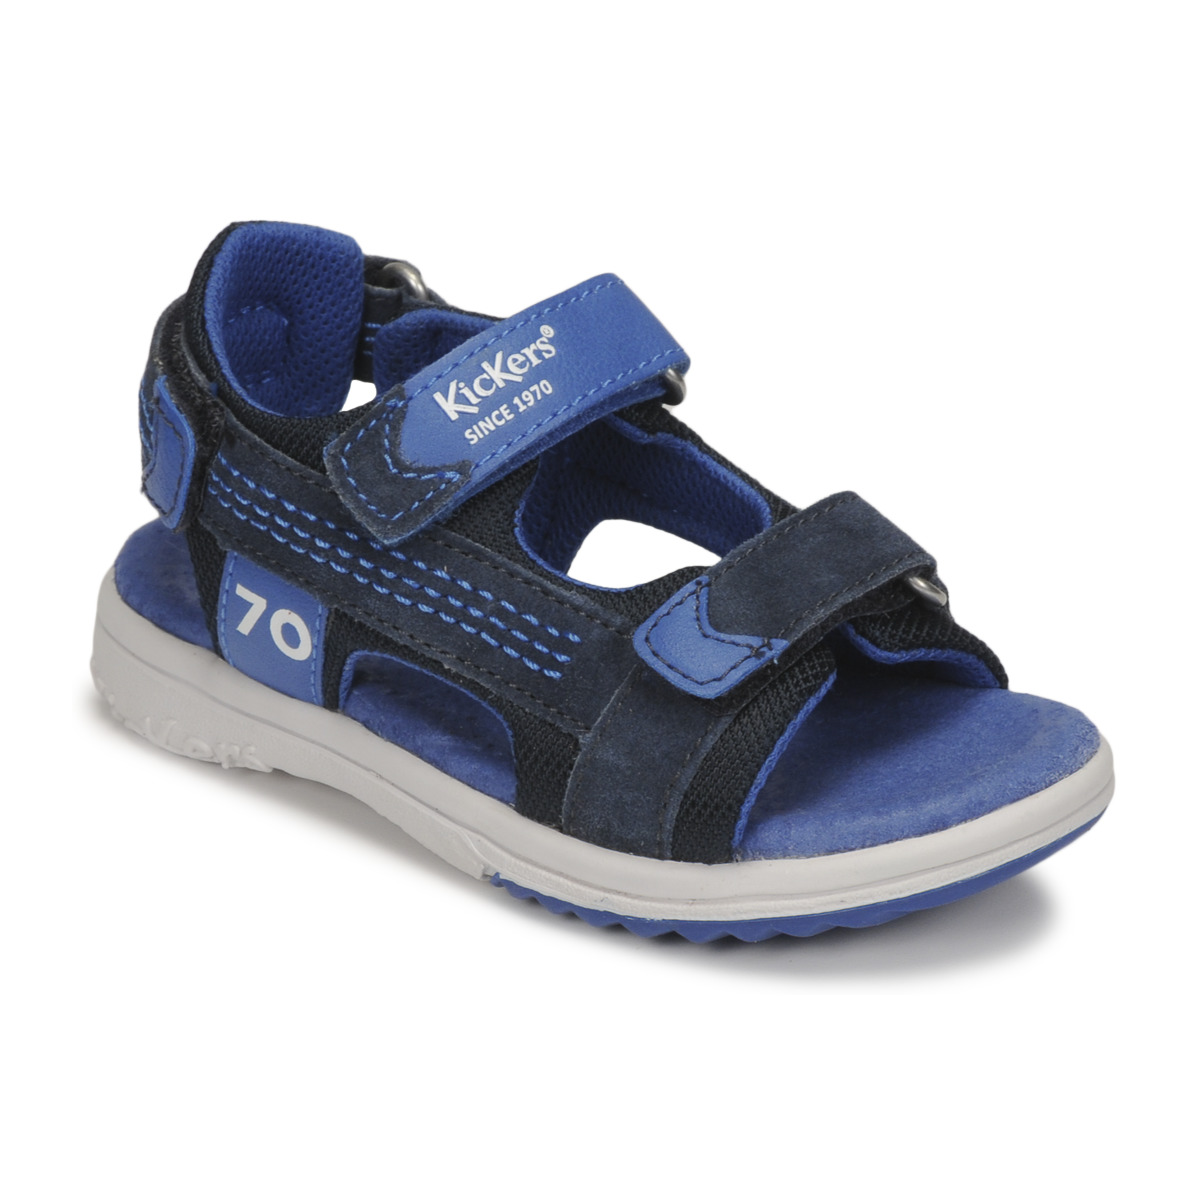 Zapatos Niño Sandalias Kickers PLANE Azul / Gris